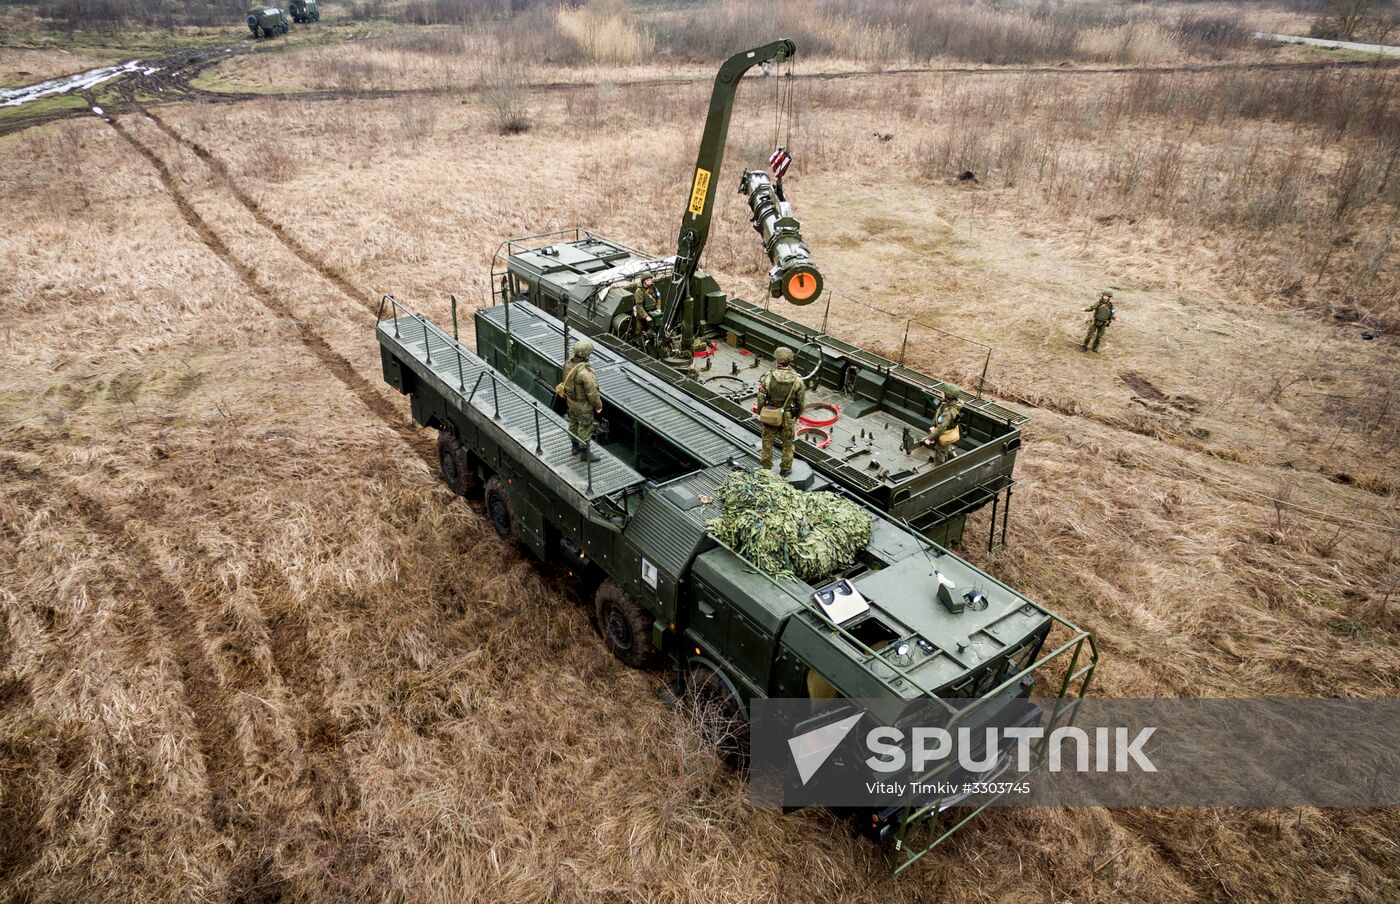 Iskander-M missile launcher crews exercise in Krasnodar Territory